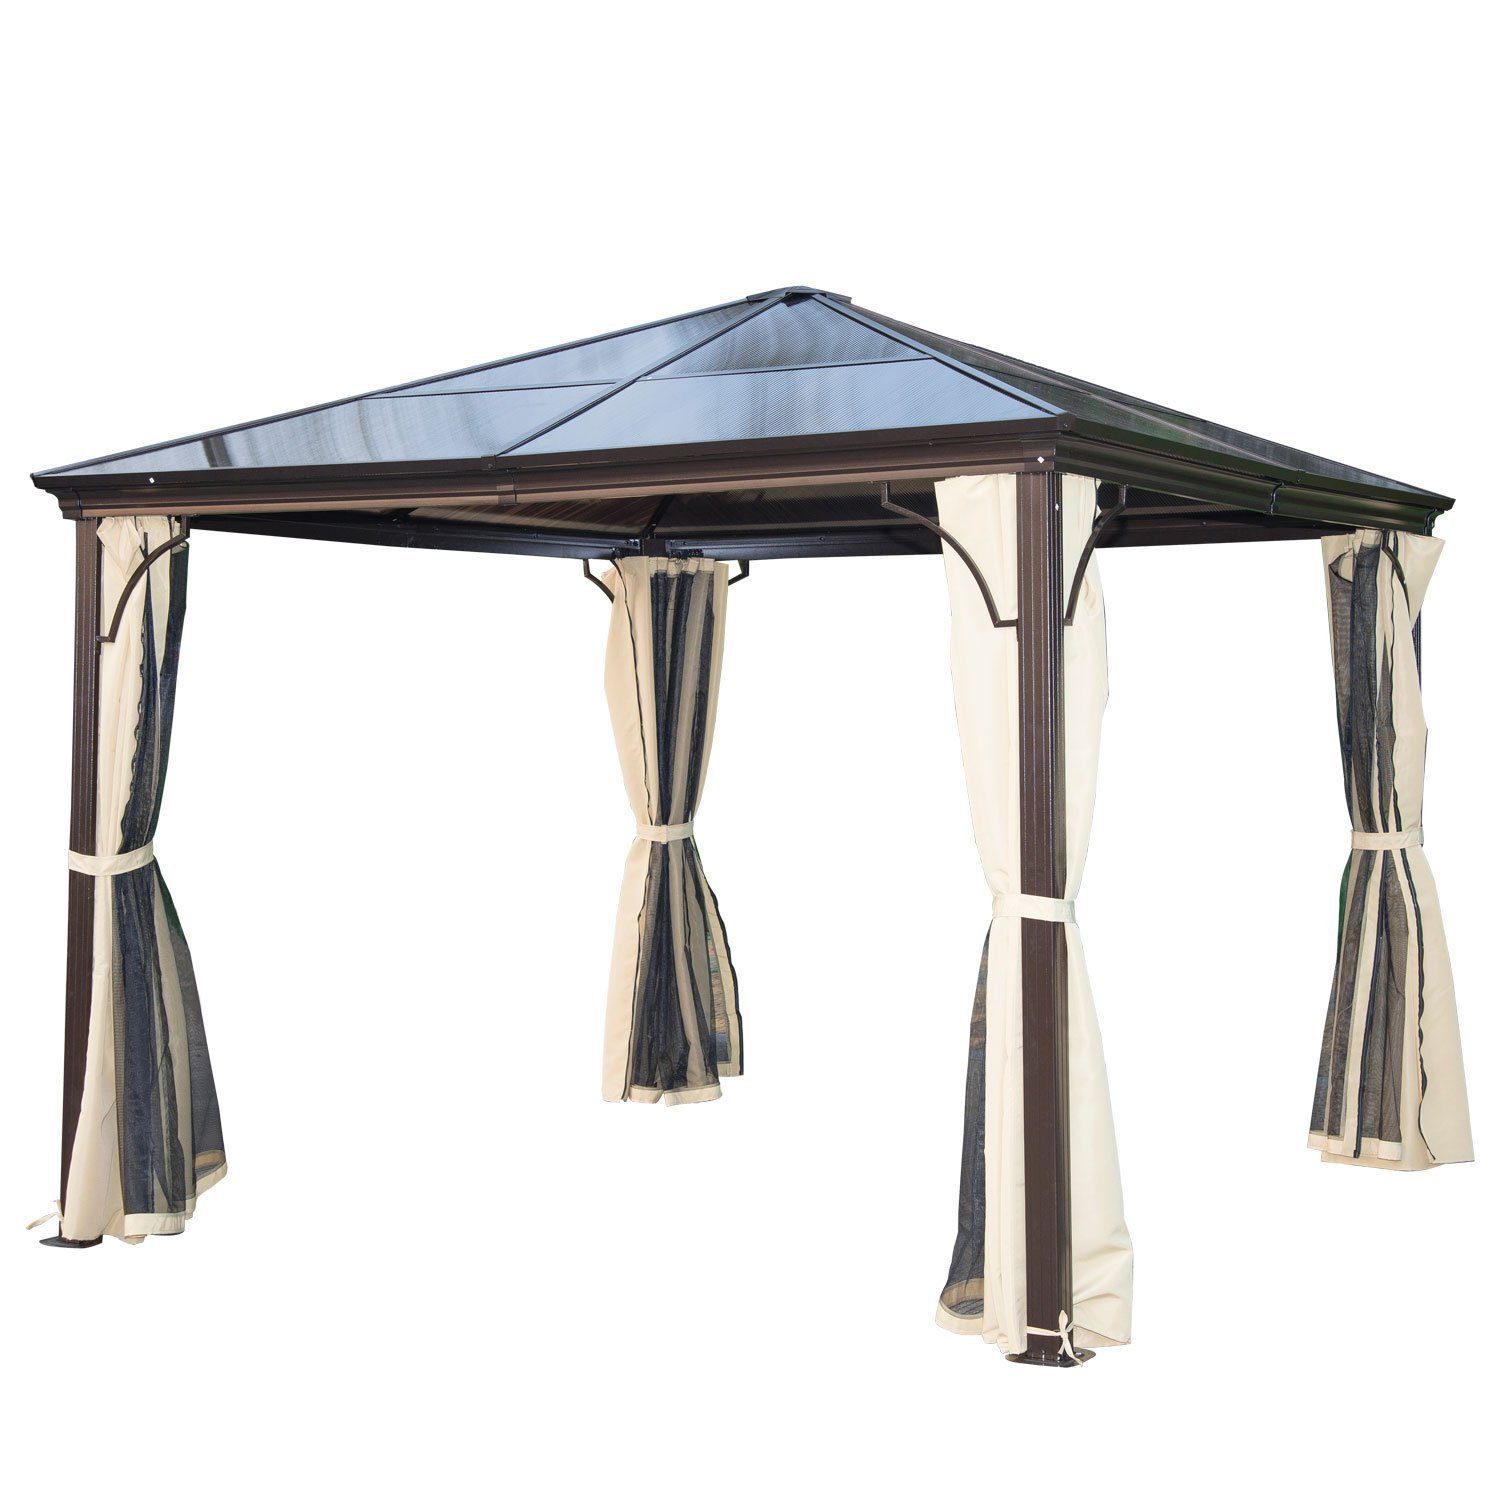 Pavillon Luxus Pavillon mit lichtdurchlässigem Dach, Wasserdicht Alu Partyzelt Grillzelt 300 x 300 x 260 cm